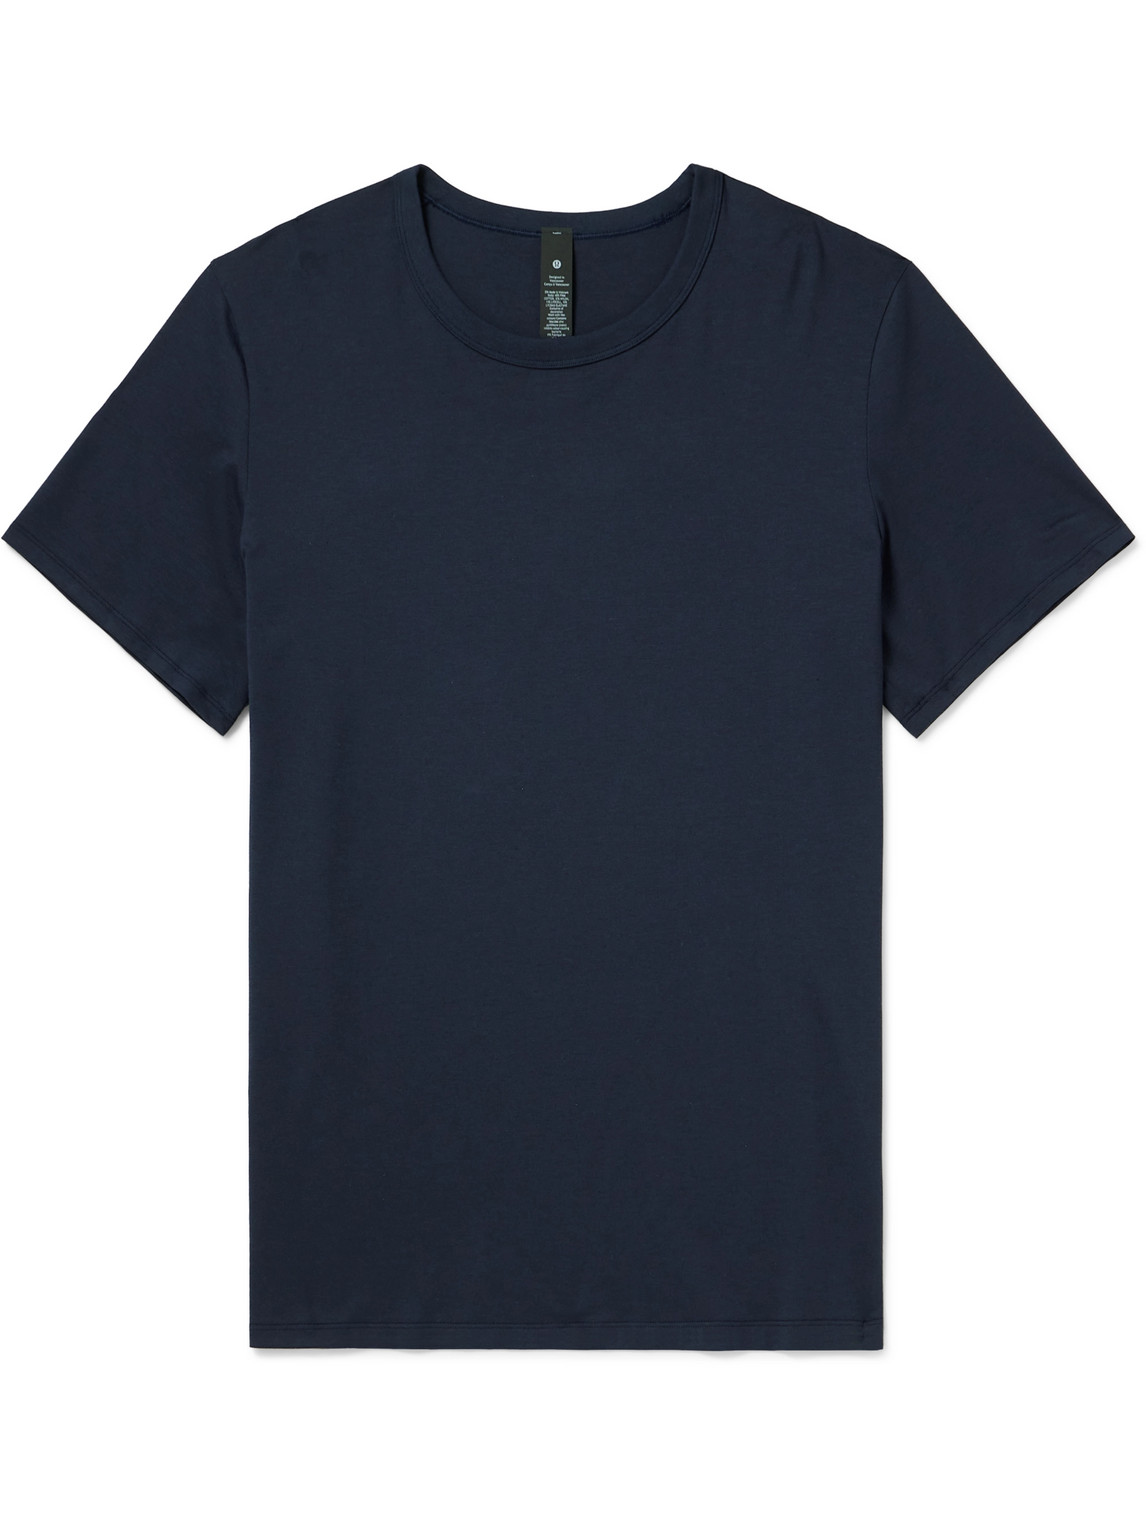 Lululemon Heavyweight Cotton Jersey T-shirt In Blue